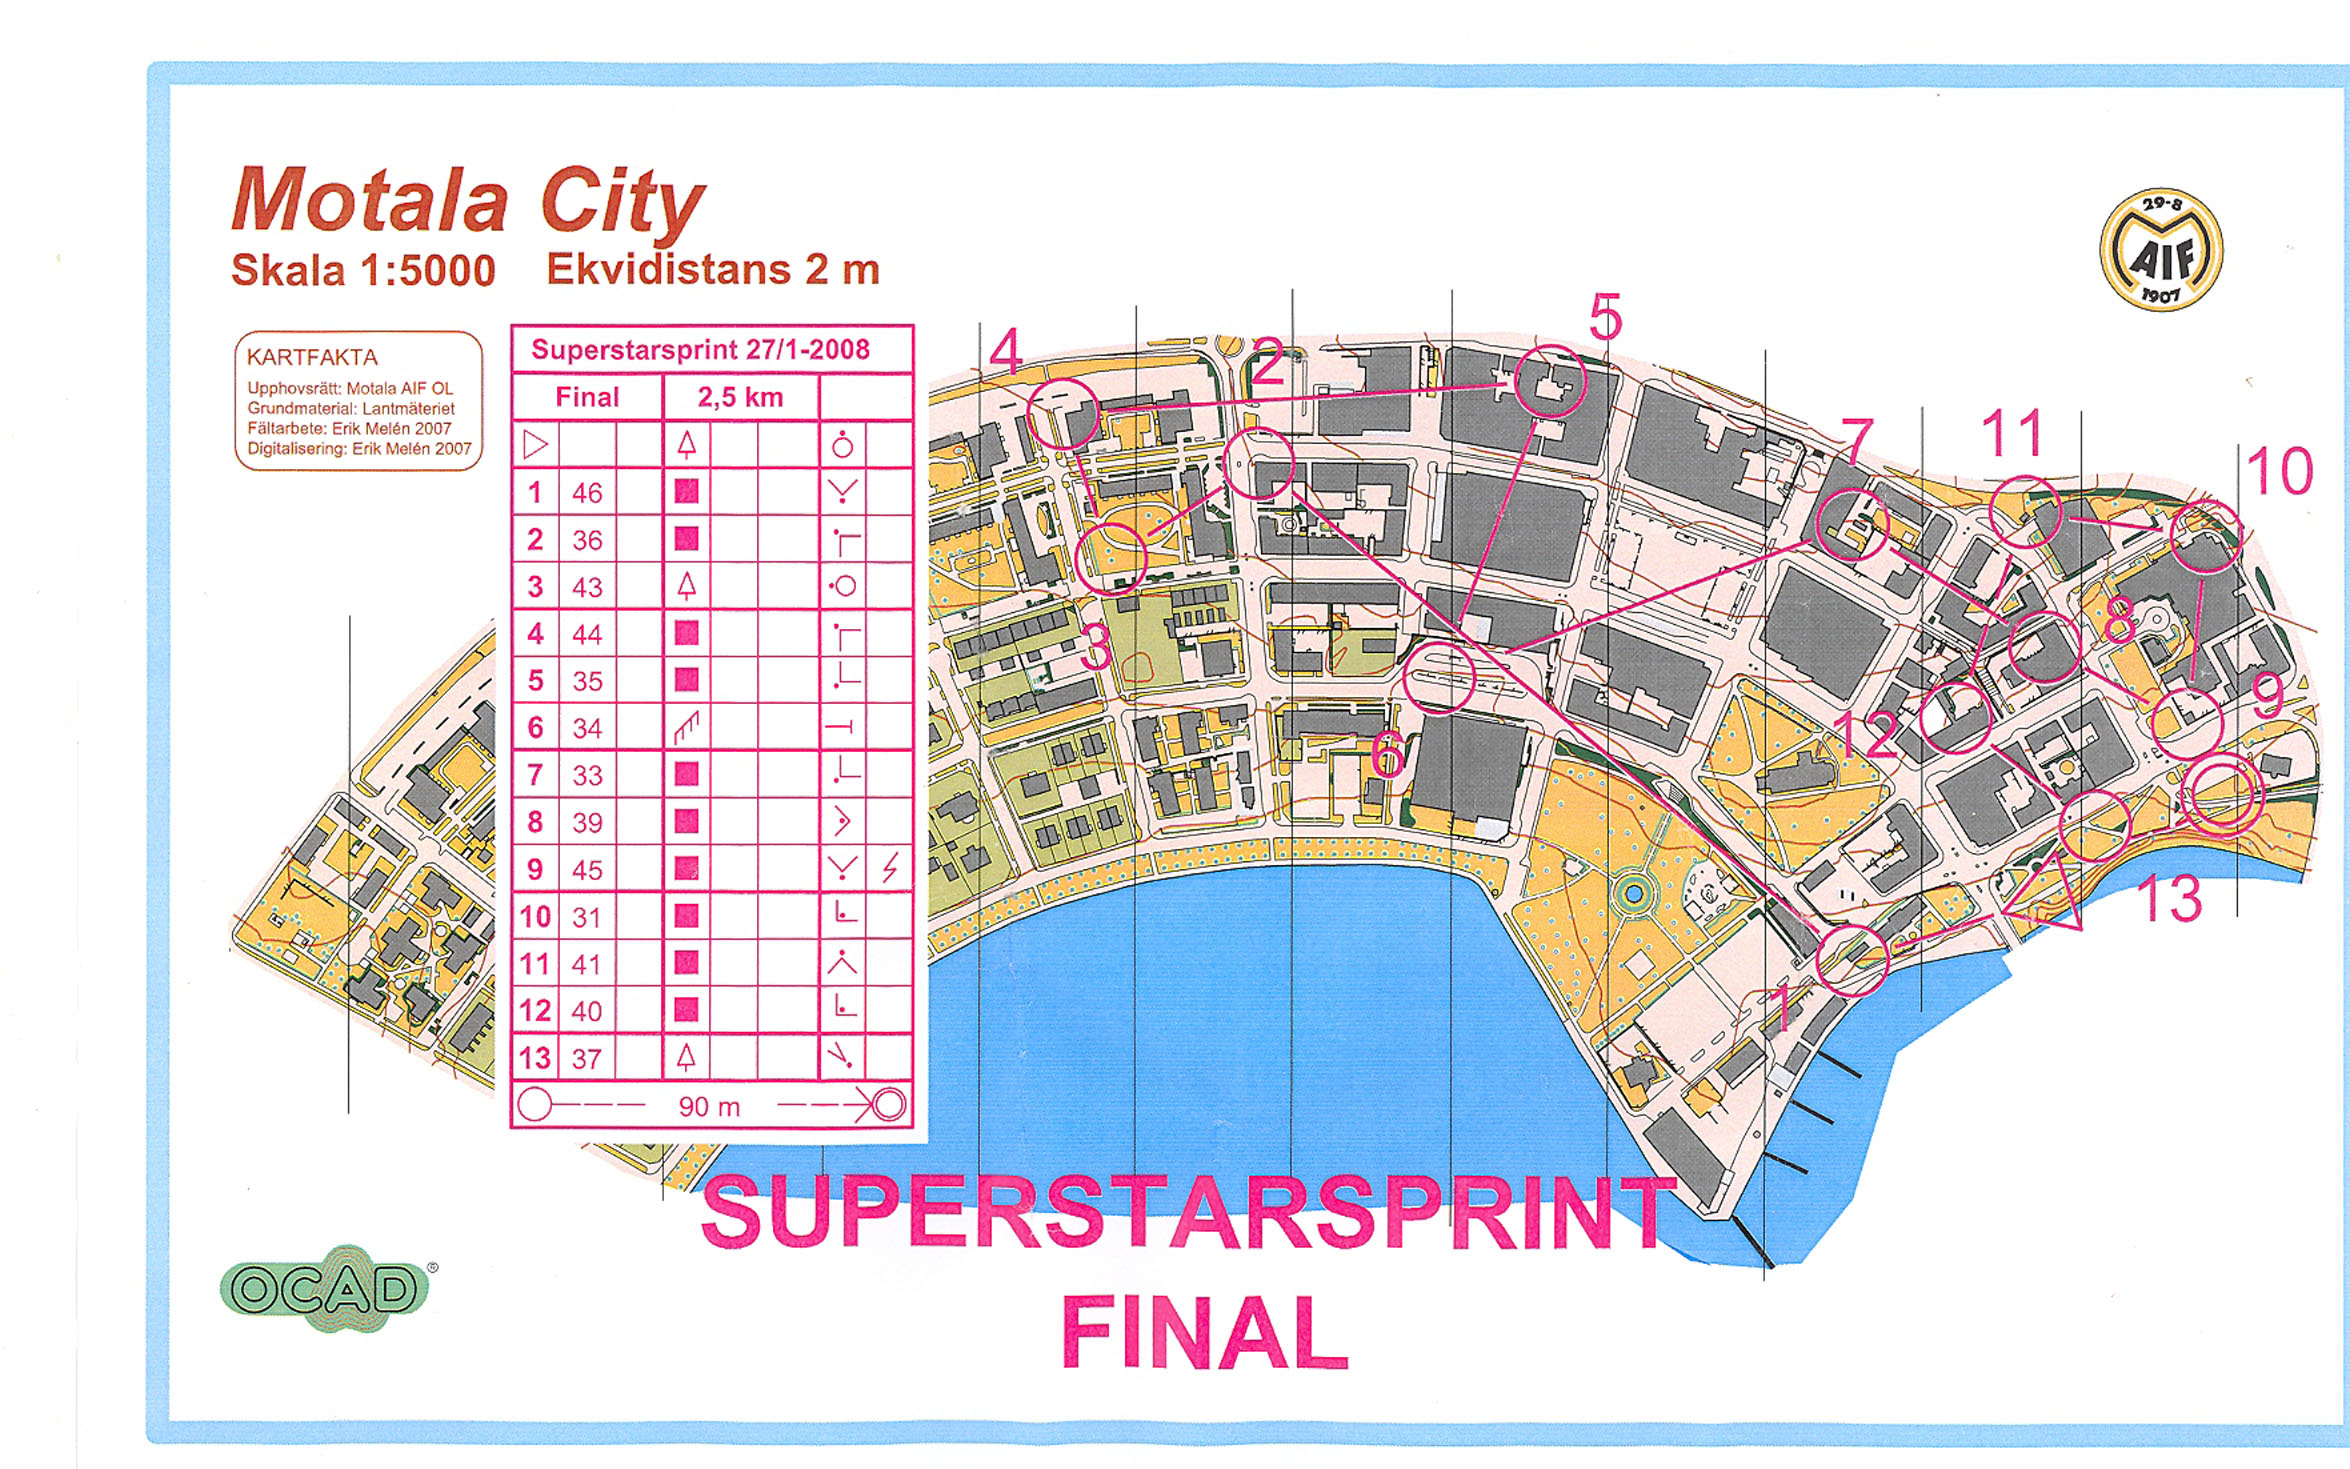 Superstarsprint Final (2008-01-27)